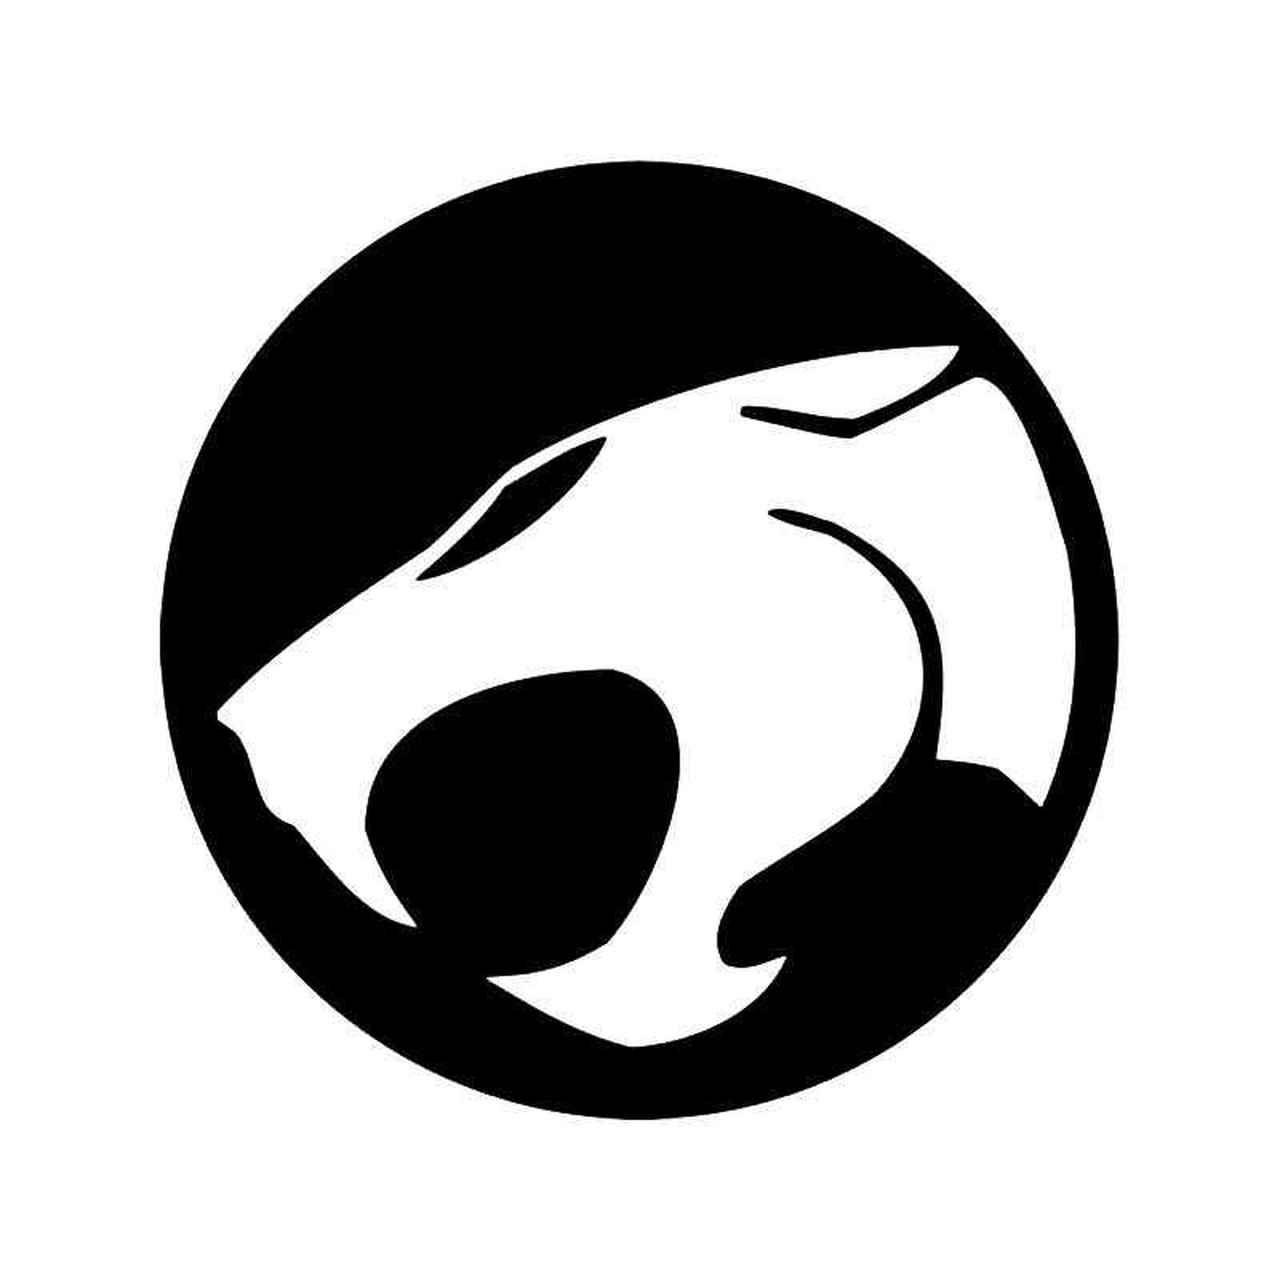 Thundercats Logo - Thundercats Emblem Logo 1 Vinyl Sticker